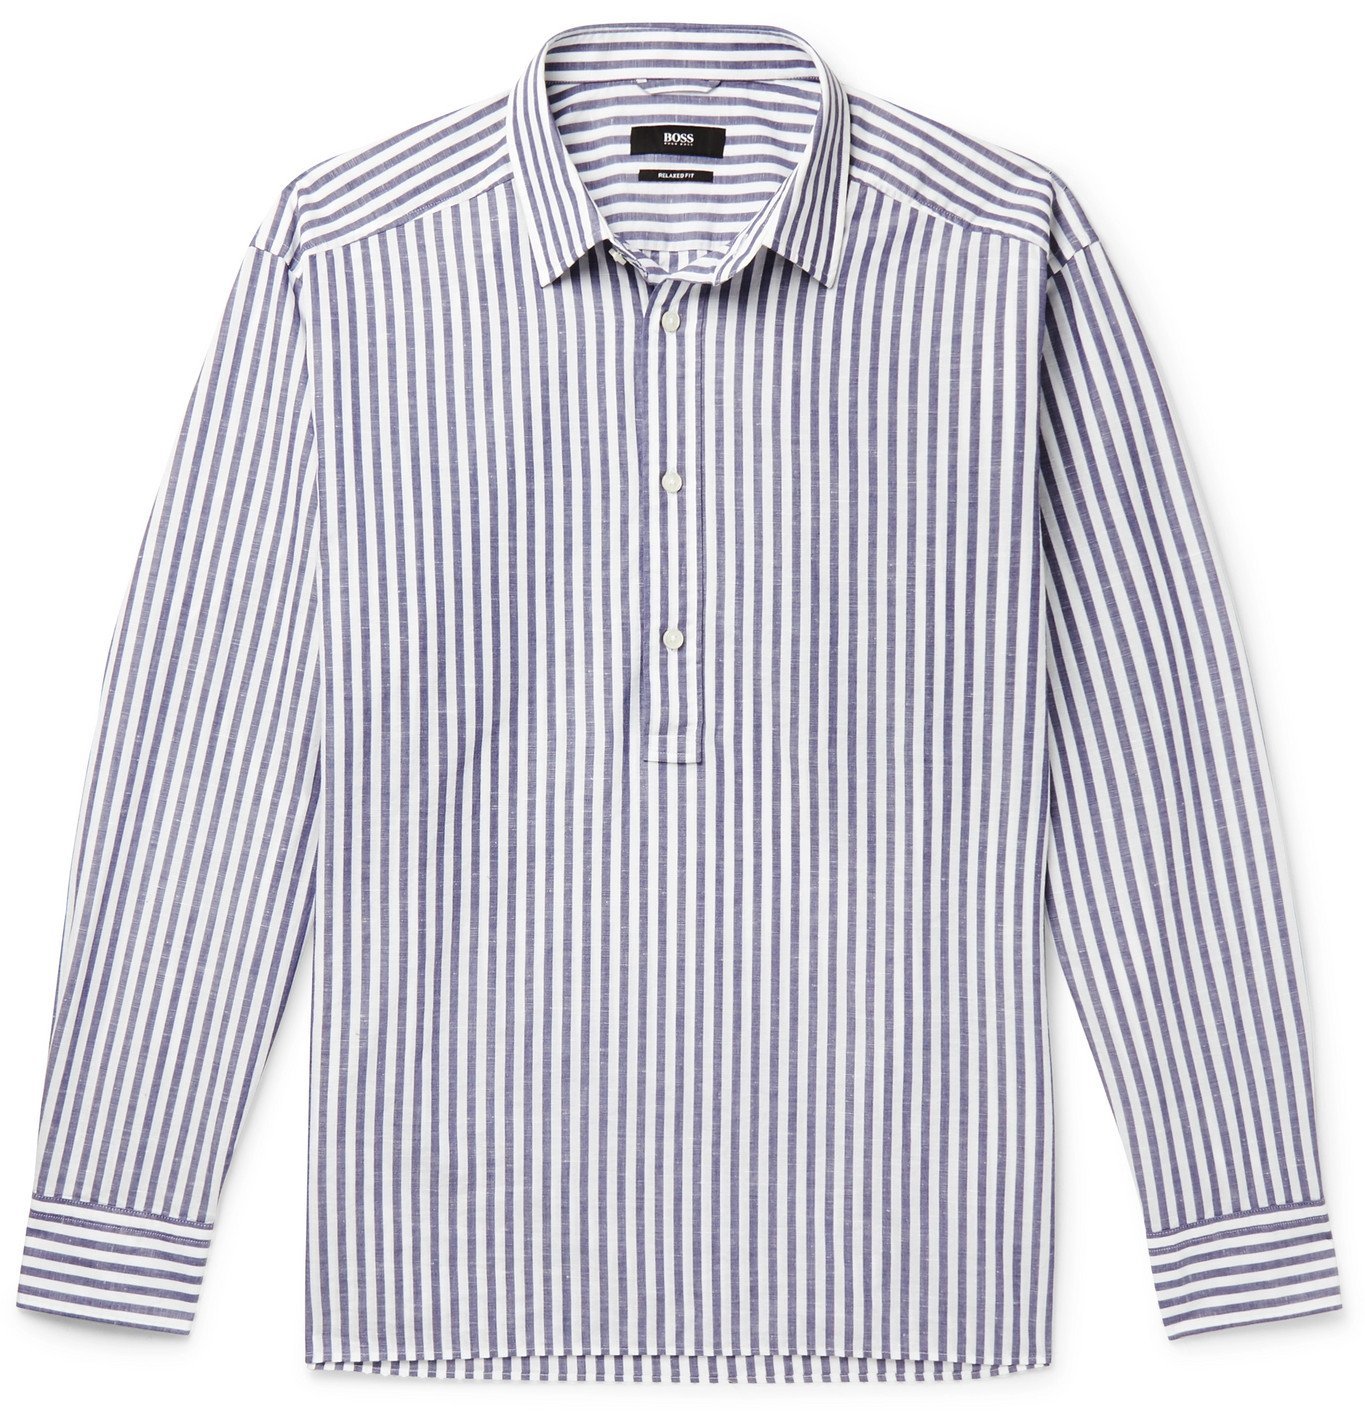 Hugo Boss - Striped Cotton and Linen-Blend Half-Placket Shirt - Blue ...